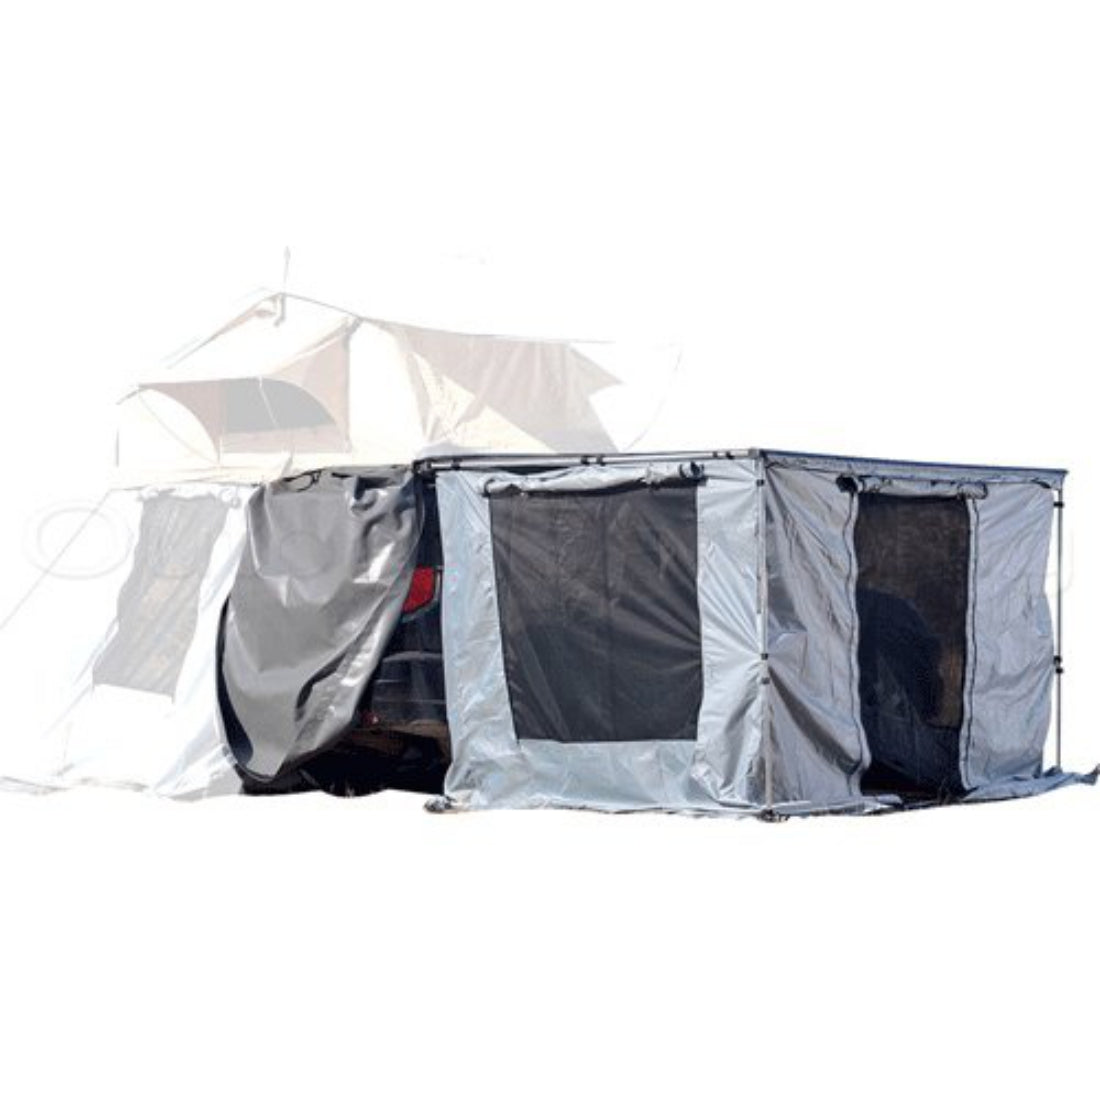 3m x 2m Awning Room Mesh Net Camping